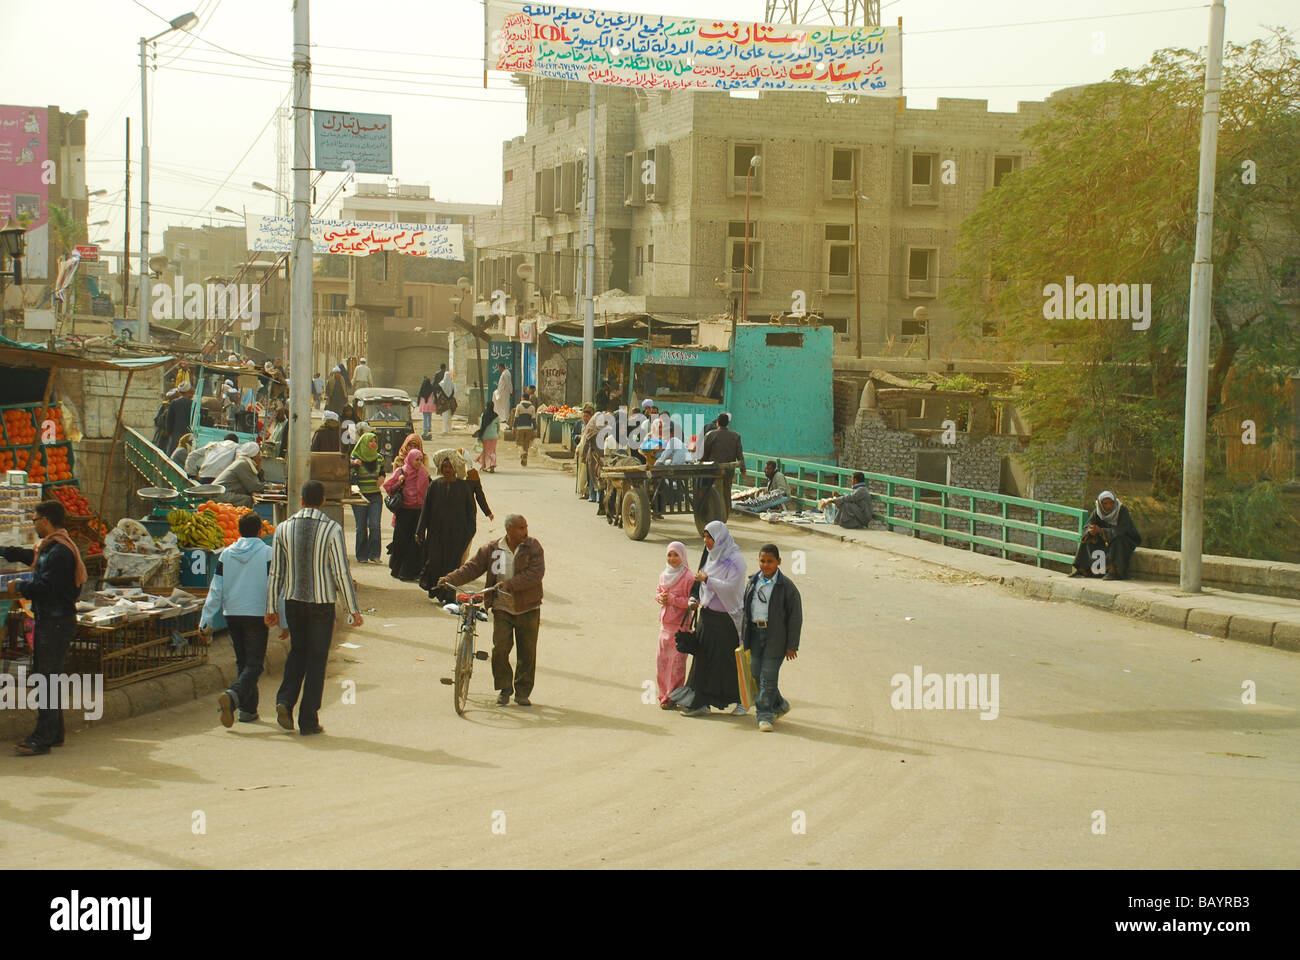 Ein typisch ländlichen Dorf Straßenszene in Ägypten Stockfoto